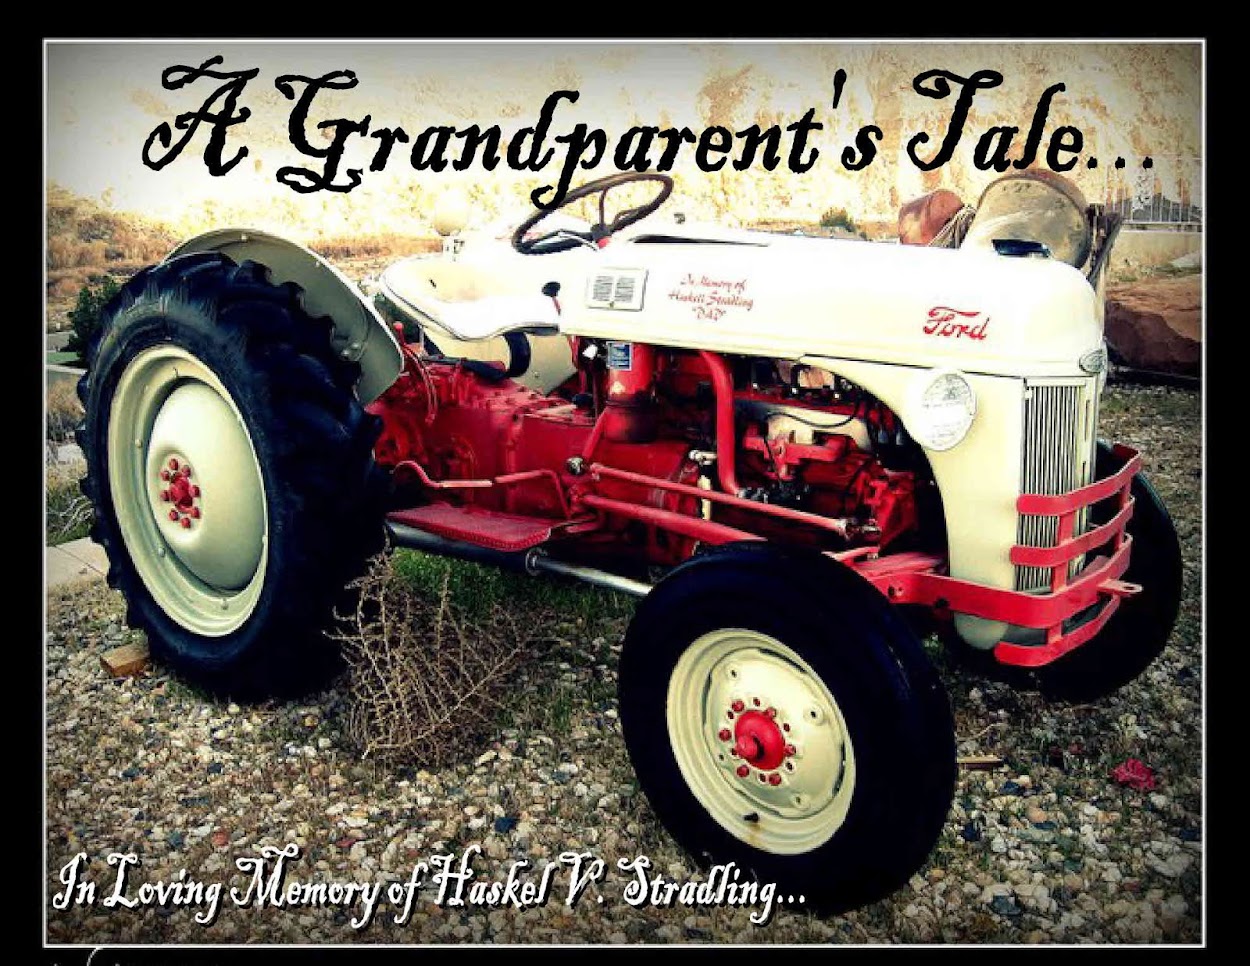 A Grandparent’s Tale